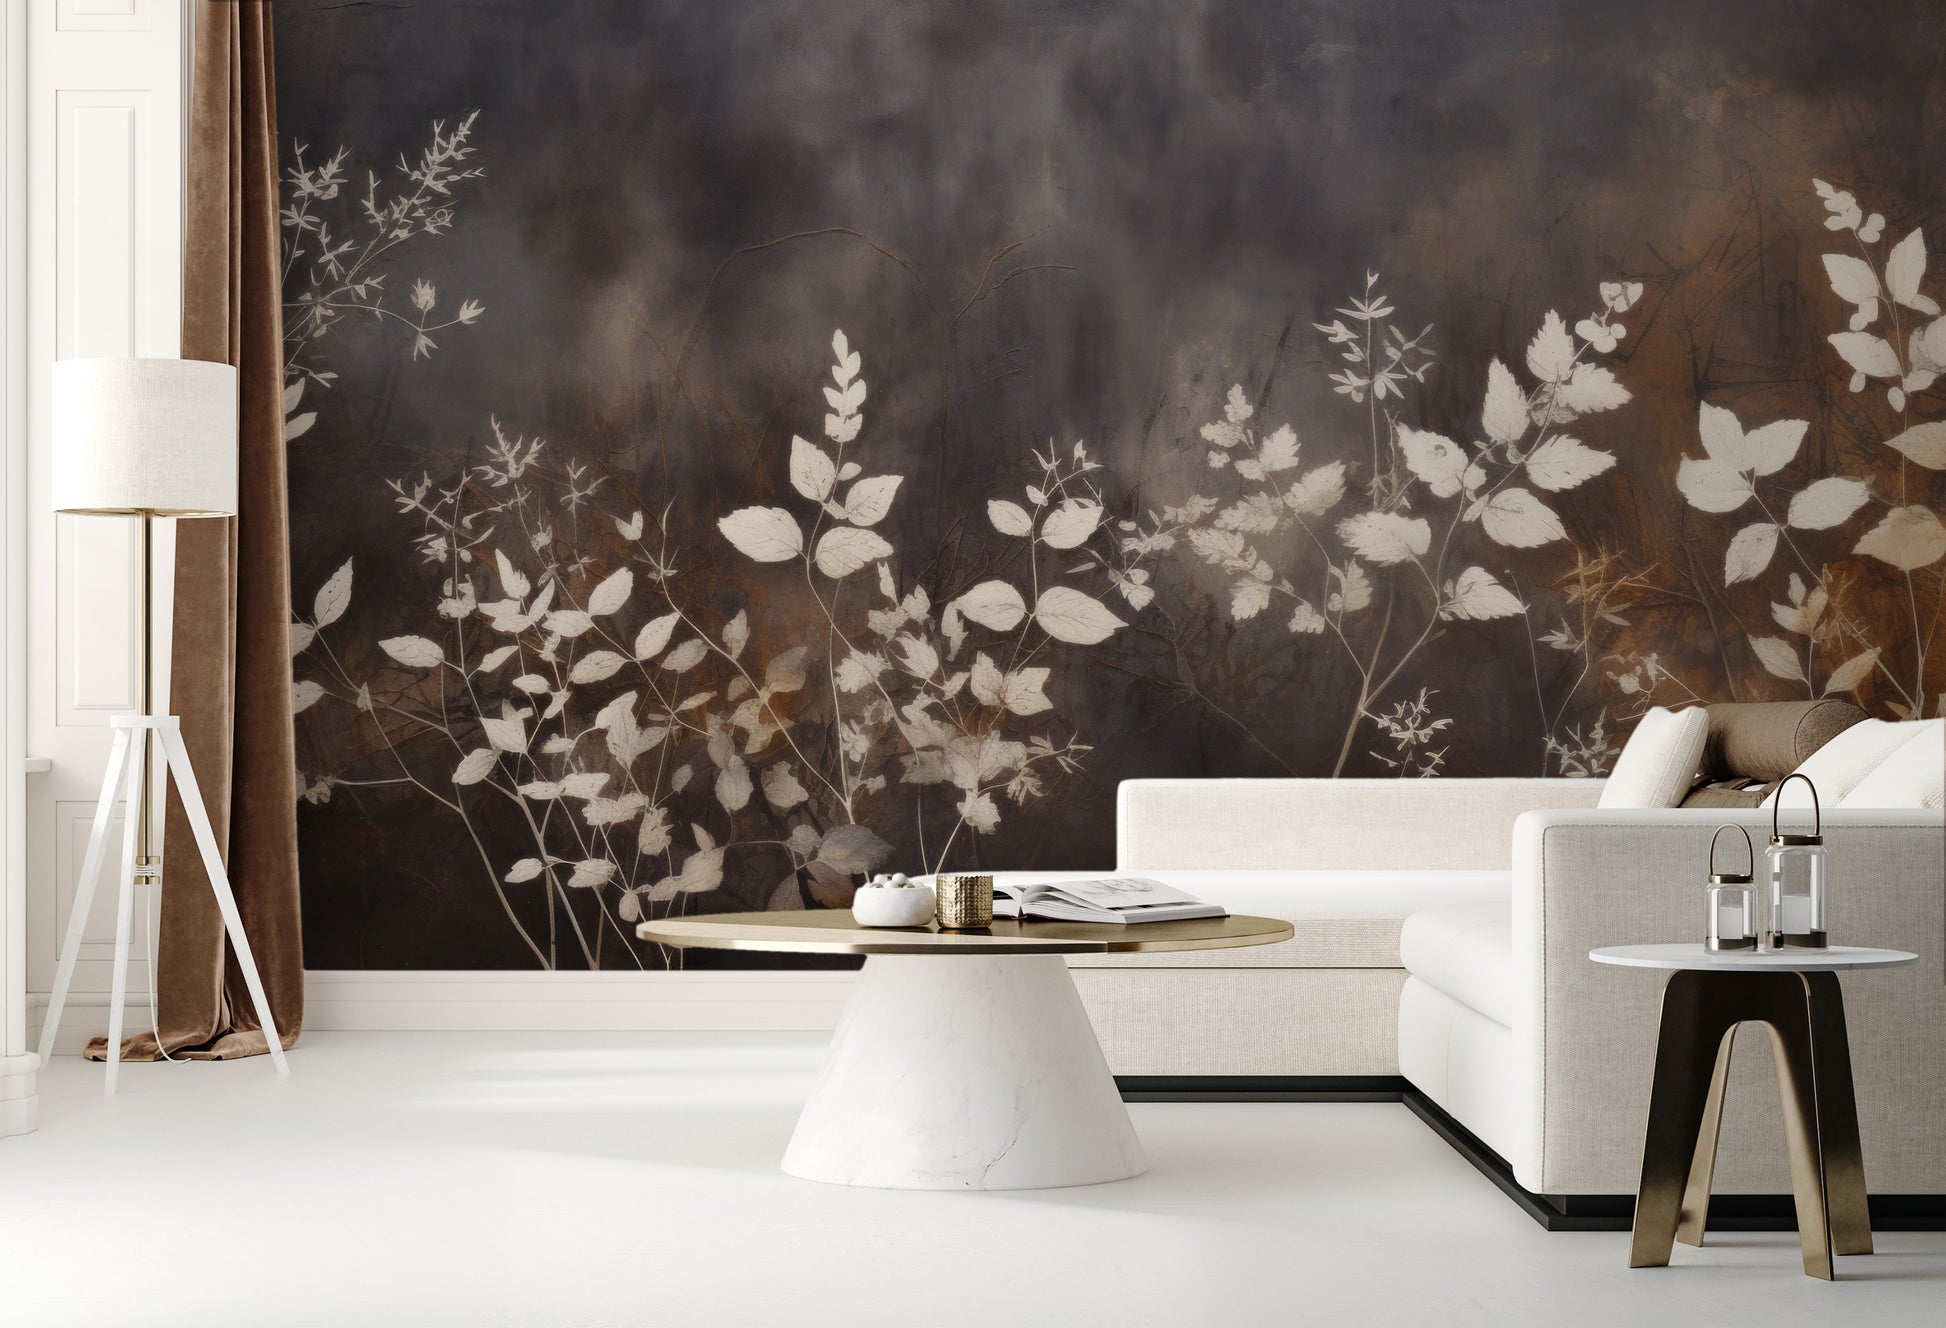 Fototapeta malowana o nazwie Misty Floral Contrast pokazana w aranżacji wnętrza.